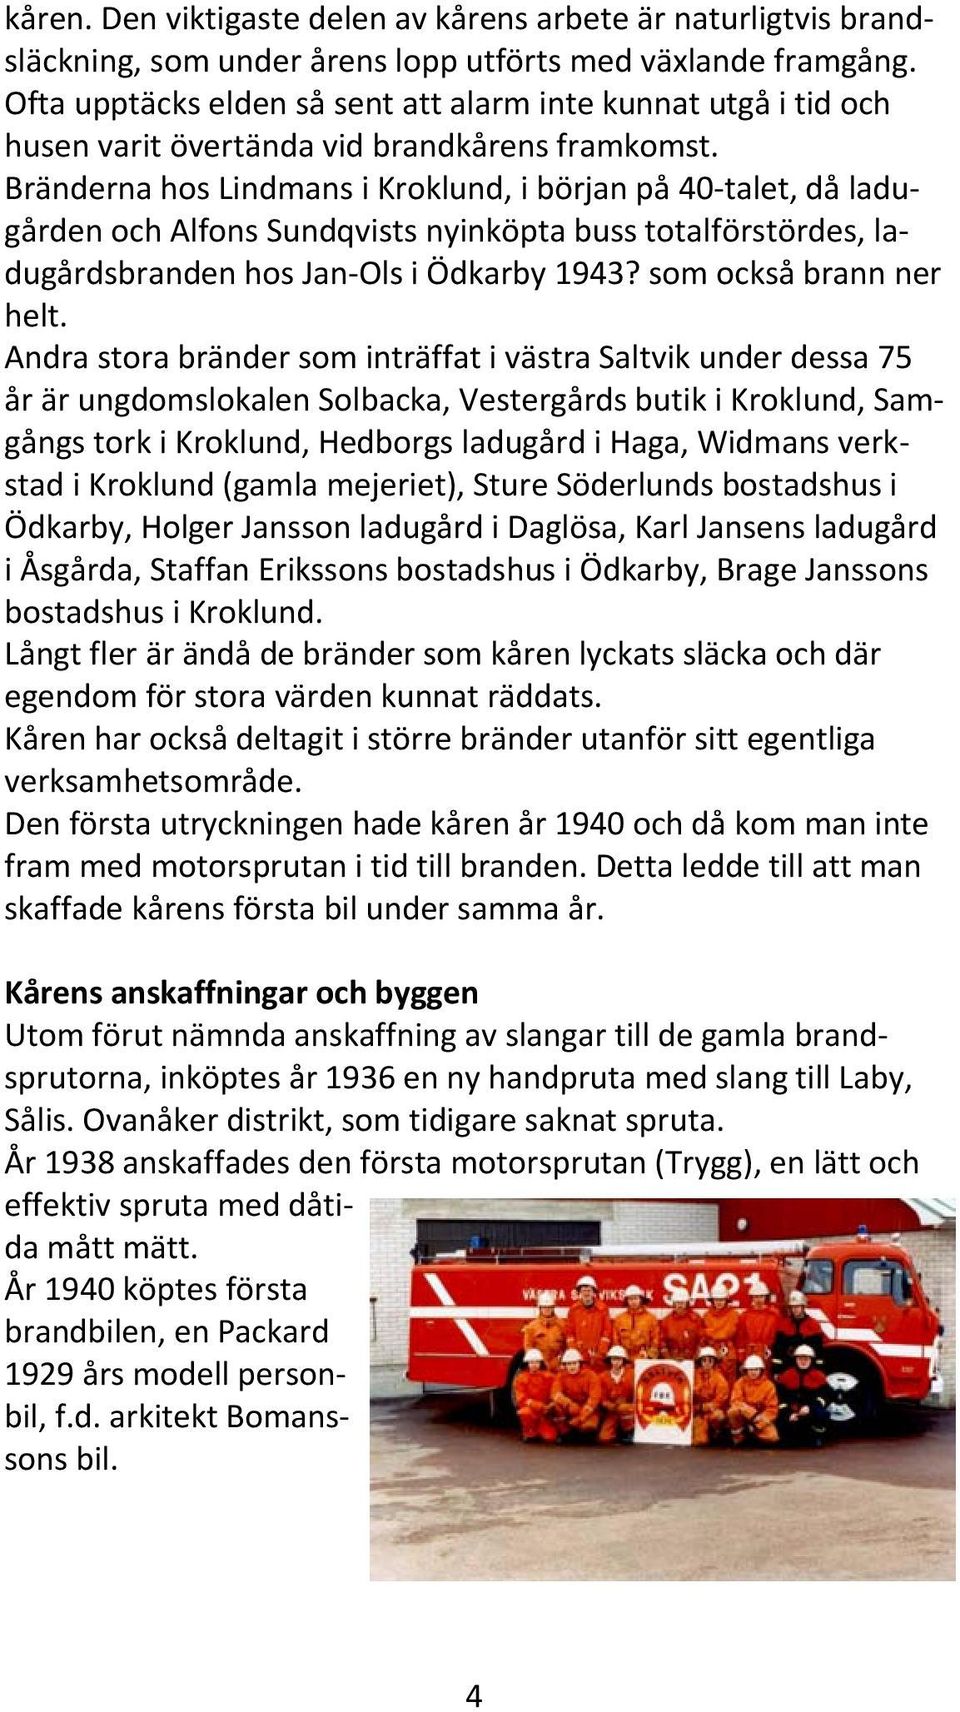 Bränderna hos Lindmans i Kroklund, i början på 40 talet, då ladugården och Alfons Sundqvists nyinköpta buss totalförstördes, ladugårdsbranden hos Jan Ols i Ödkarby 1943? som också brann ner helt.